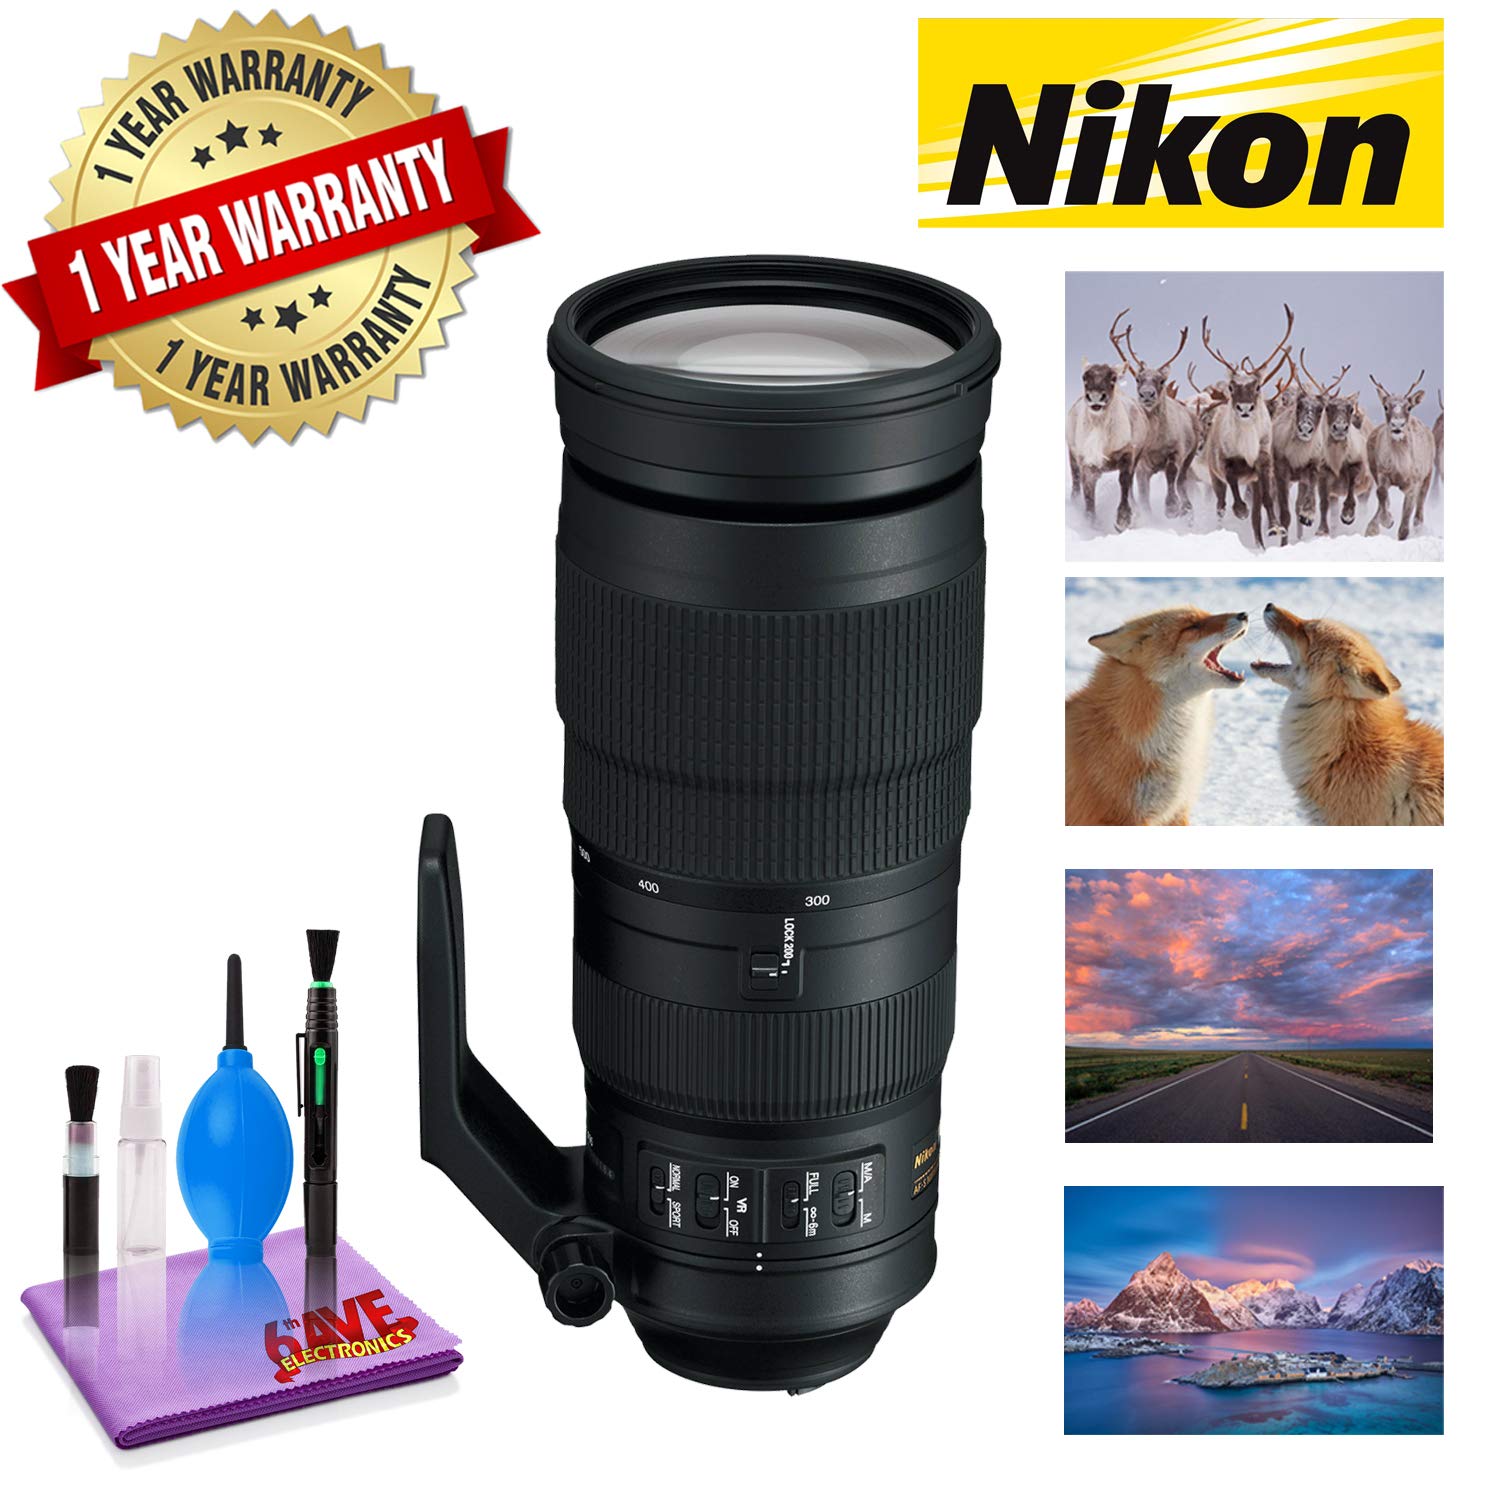 Nikon AF-S NIKKOR 200-500mm f/5.6E ED VR Lens with 1 Year Warranty